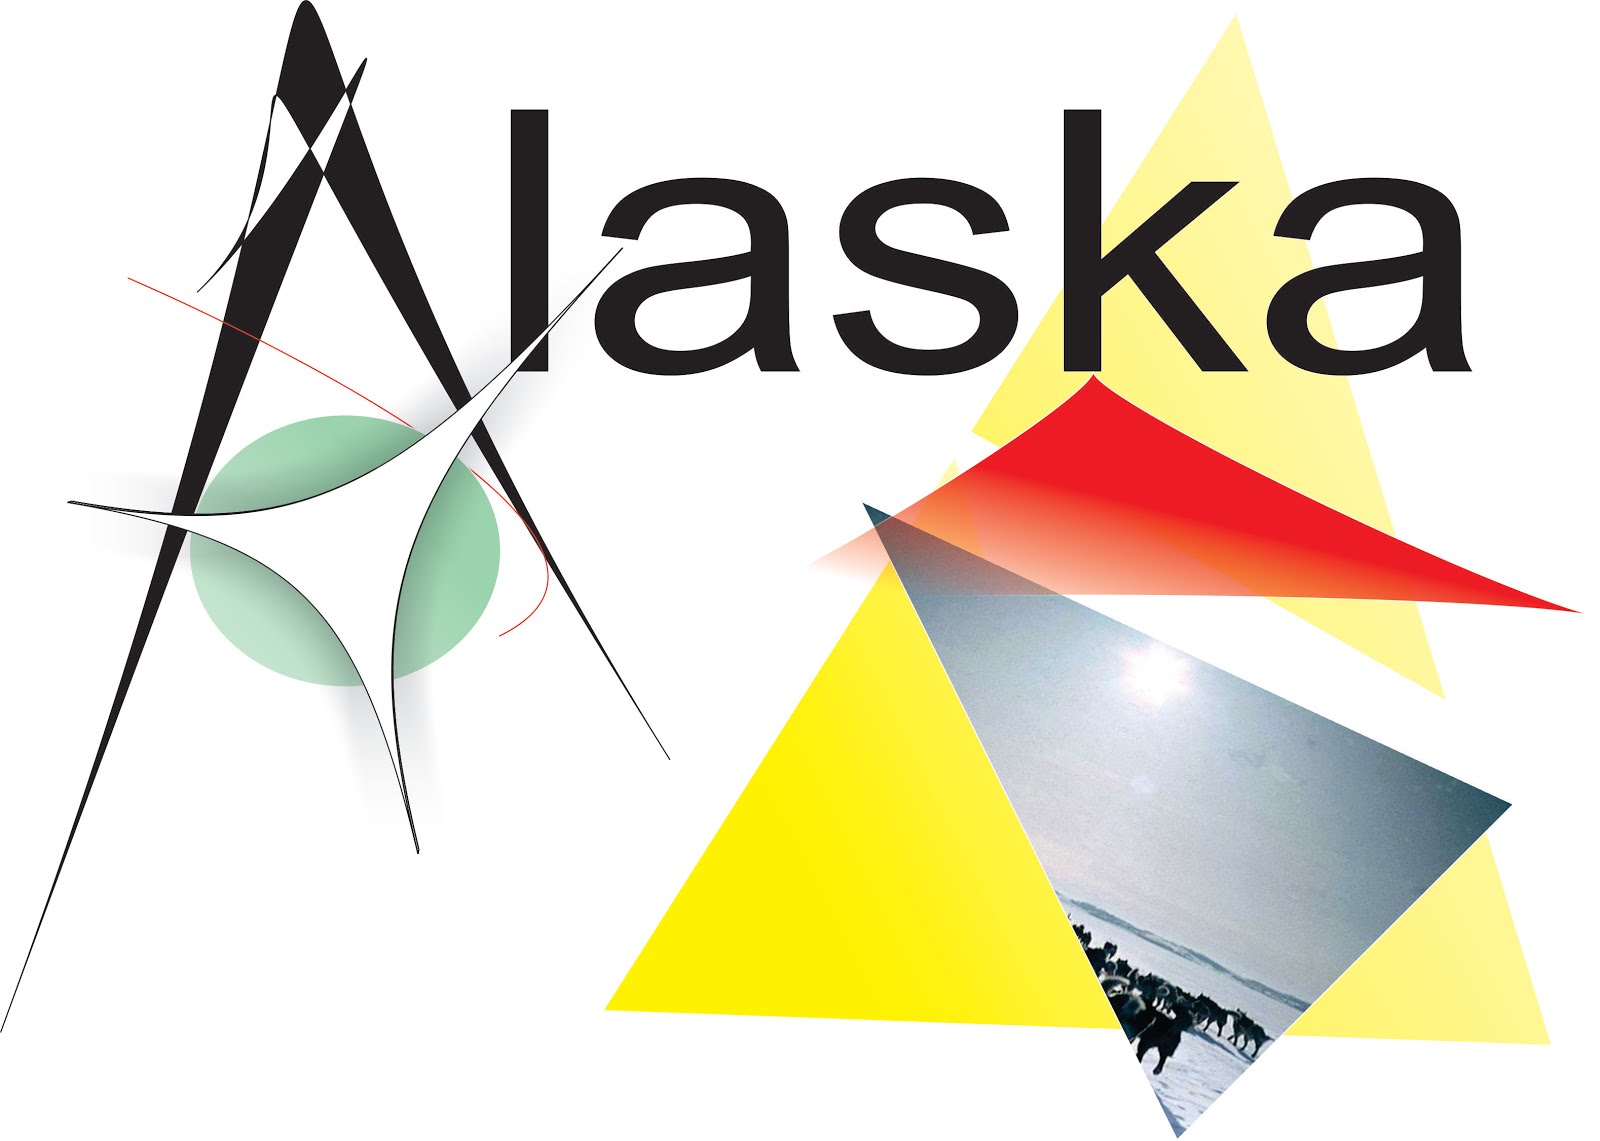 Logo Alaska